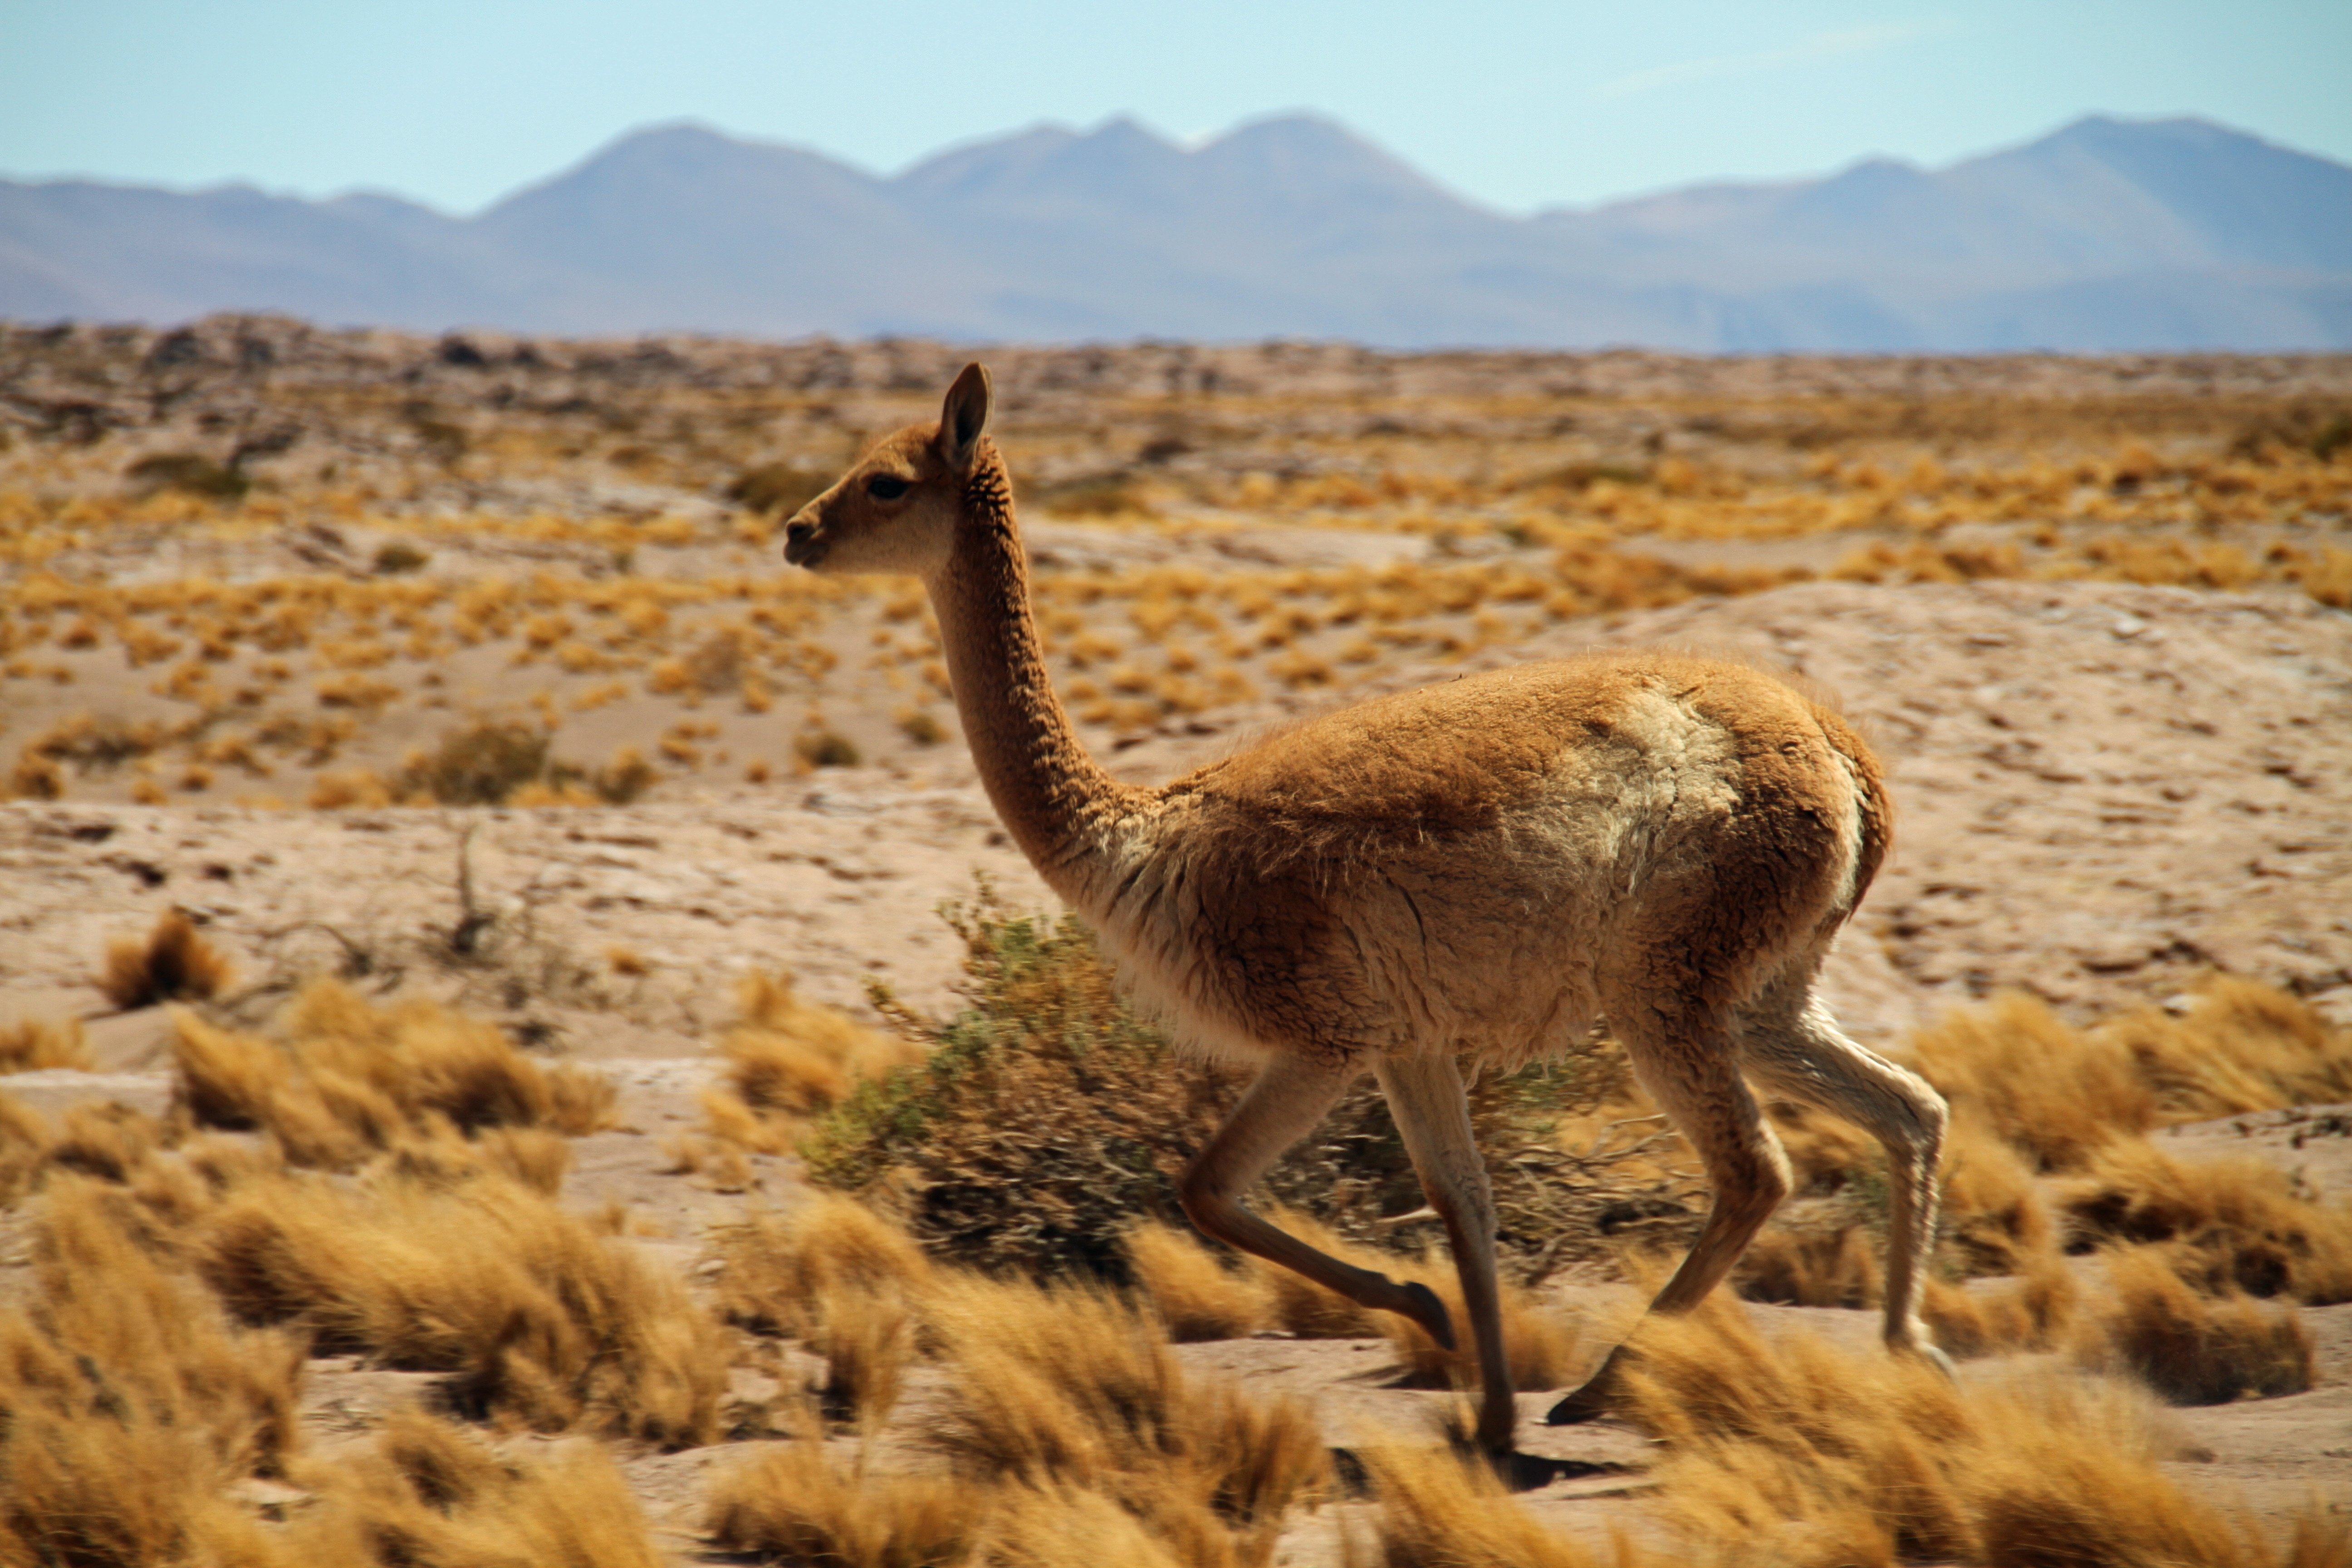 Какие животные обитают в пустынях и полупустынях